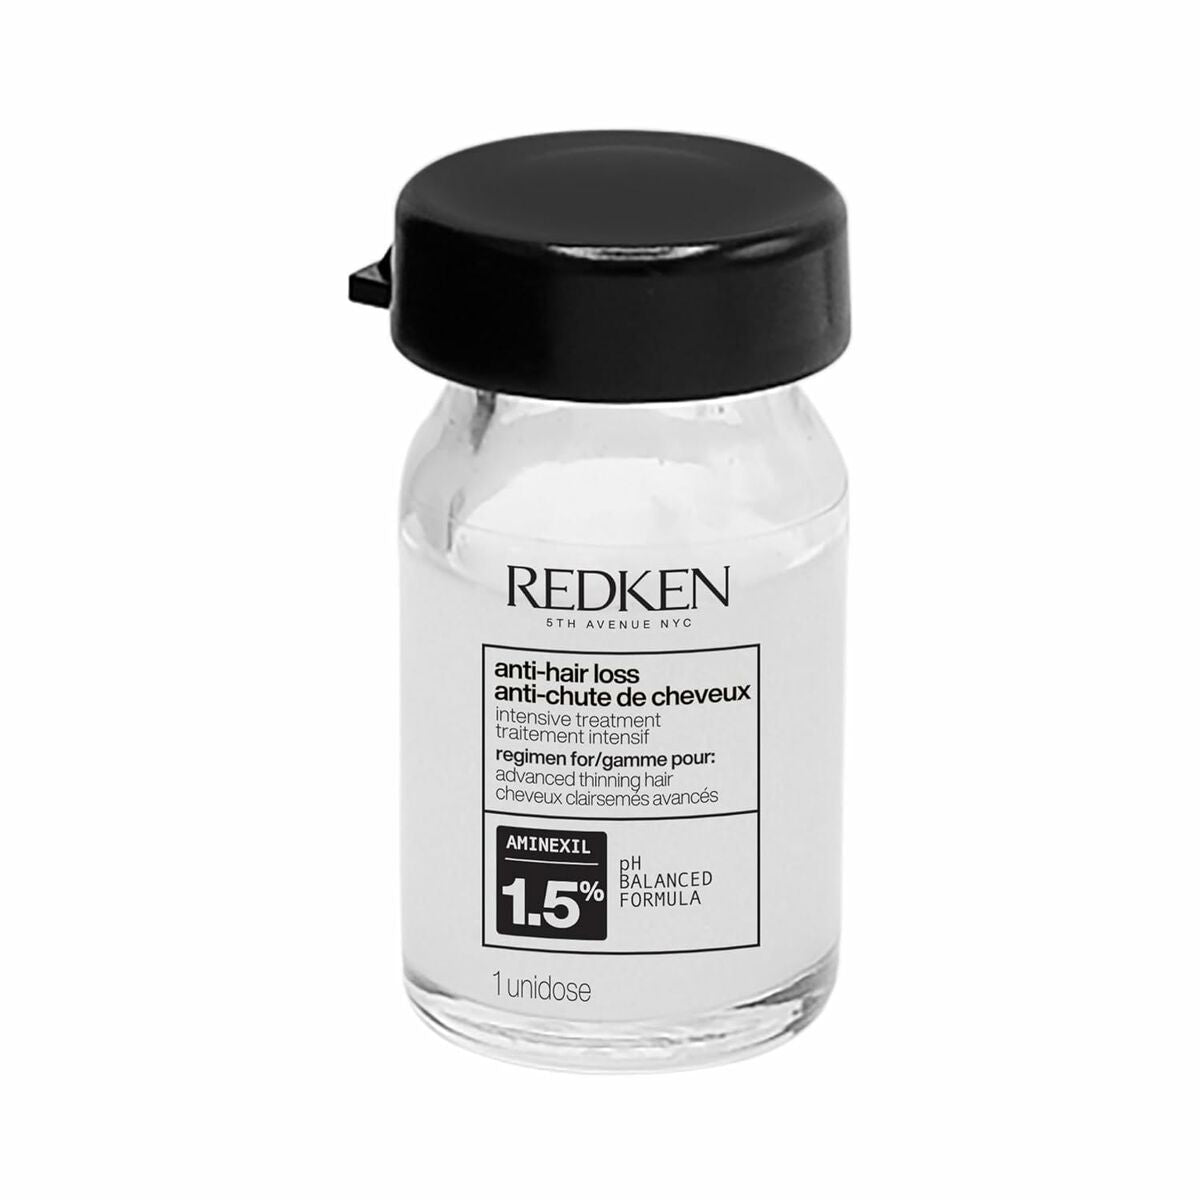 Tratamentul cu pierderi anti-păr Redken Cerafill maximizează 6 ml 10 unități